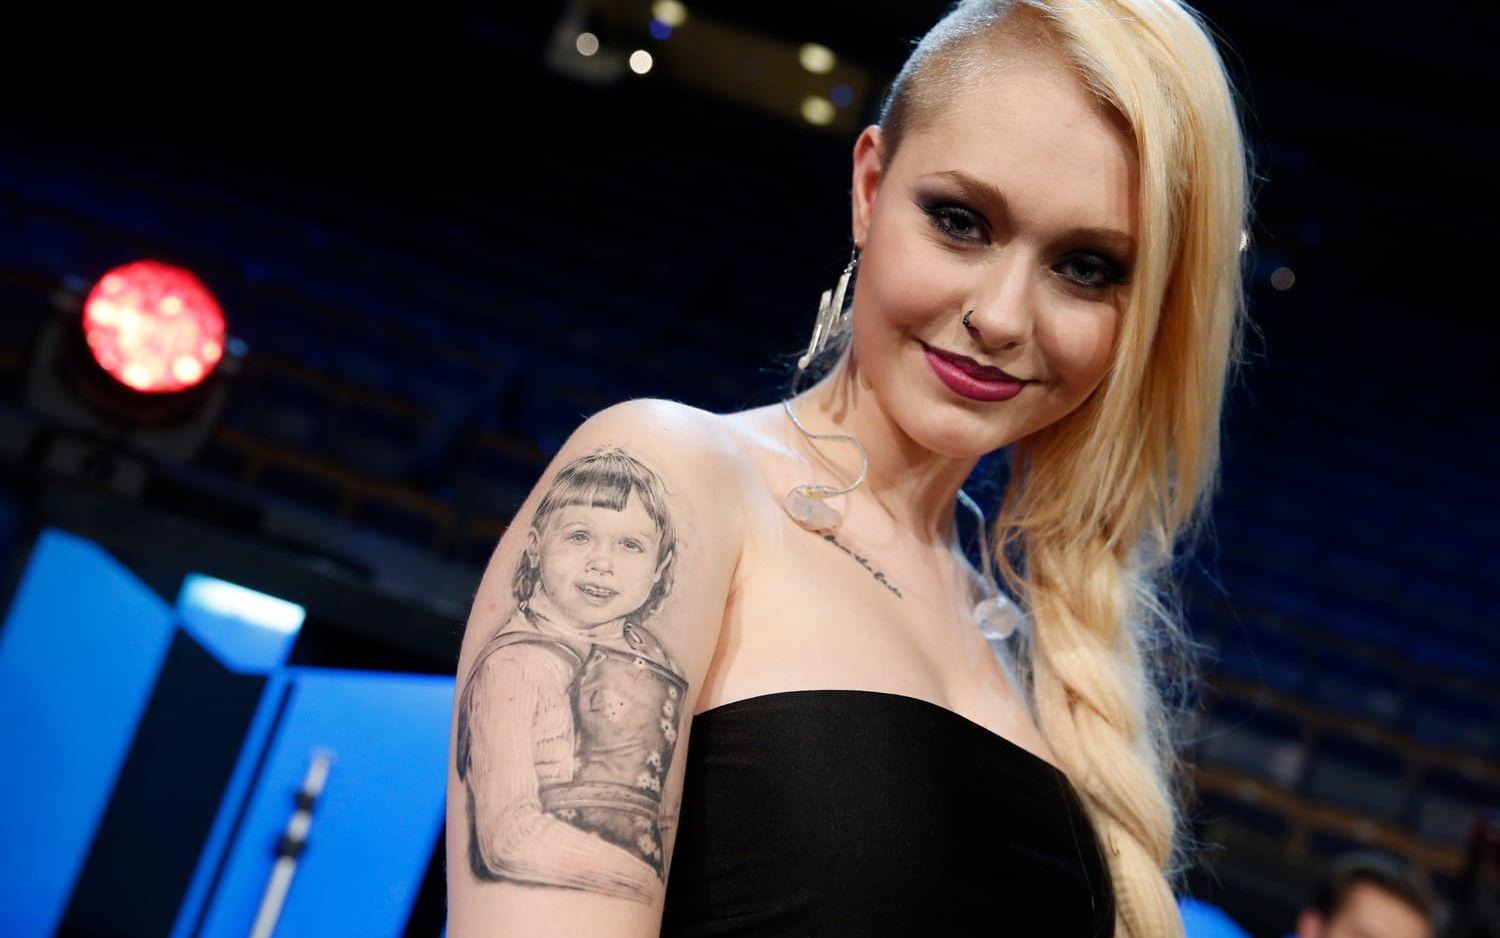 Manda tävlade i Melodifestivalen 2014 och visade upp sin tatuering föreställande hennes mamma (som sjuåring). BILD: TT